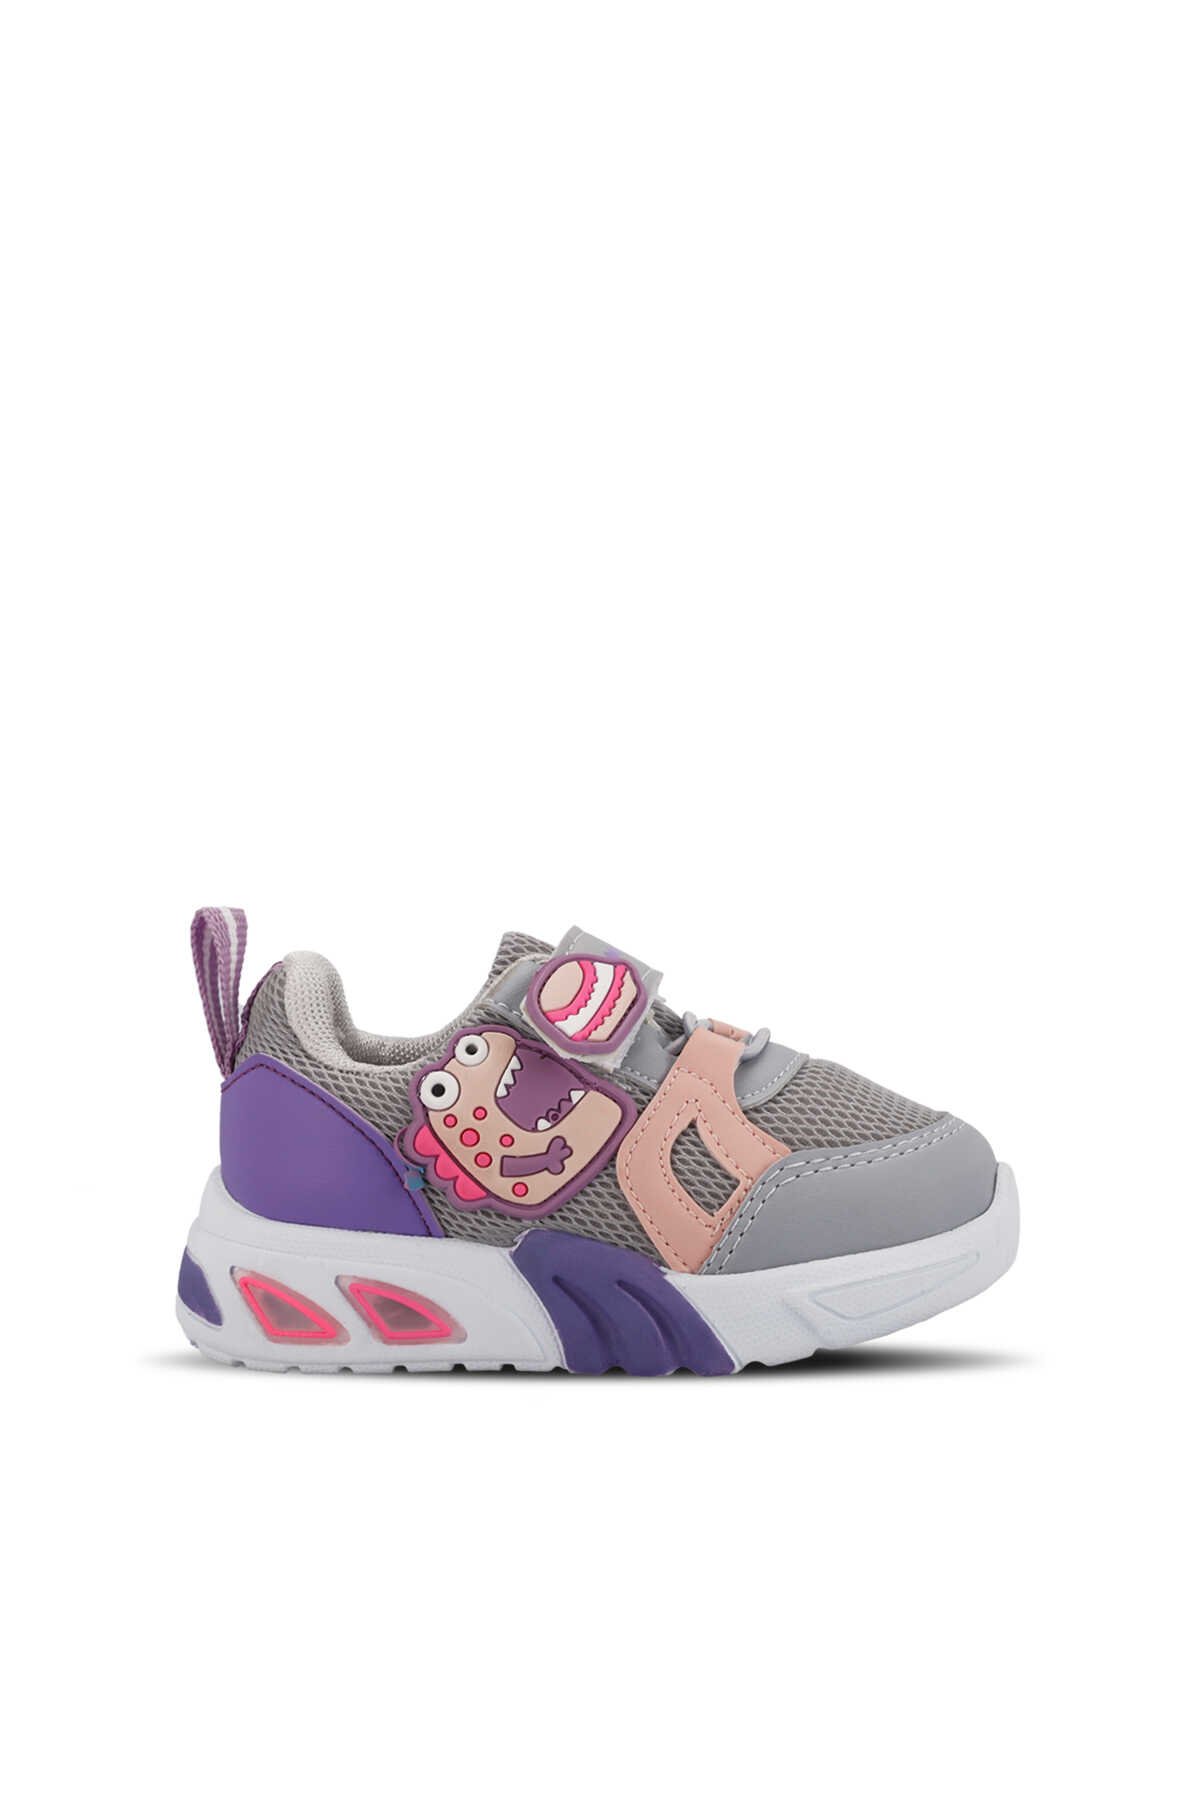 Mille - Mille PANAMA Kız Çocuk Sneaker Ayakkabı Açık Gri / Mor